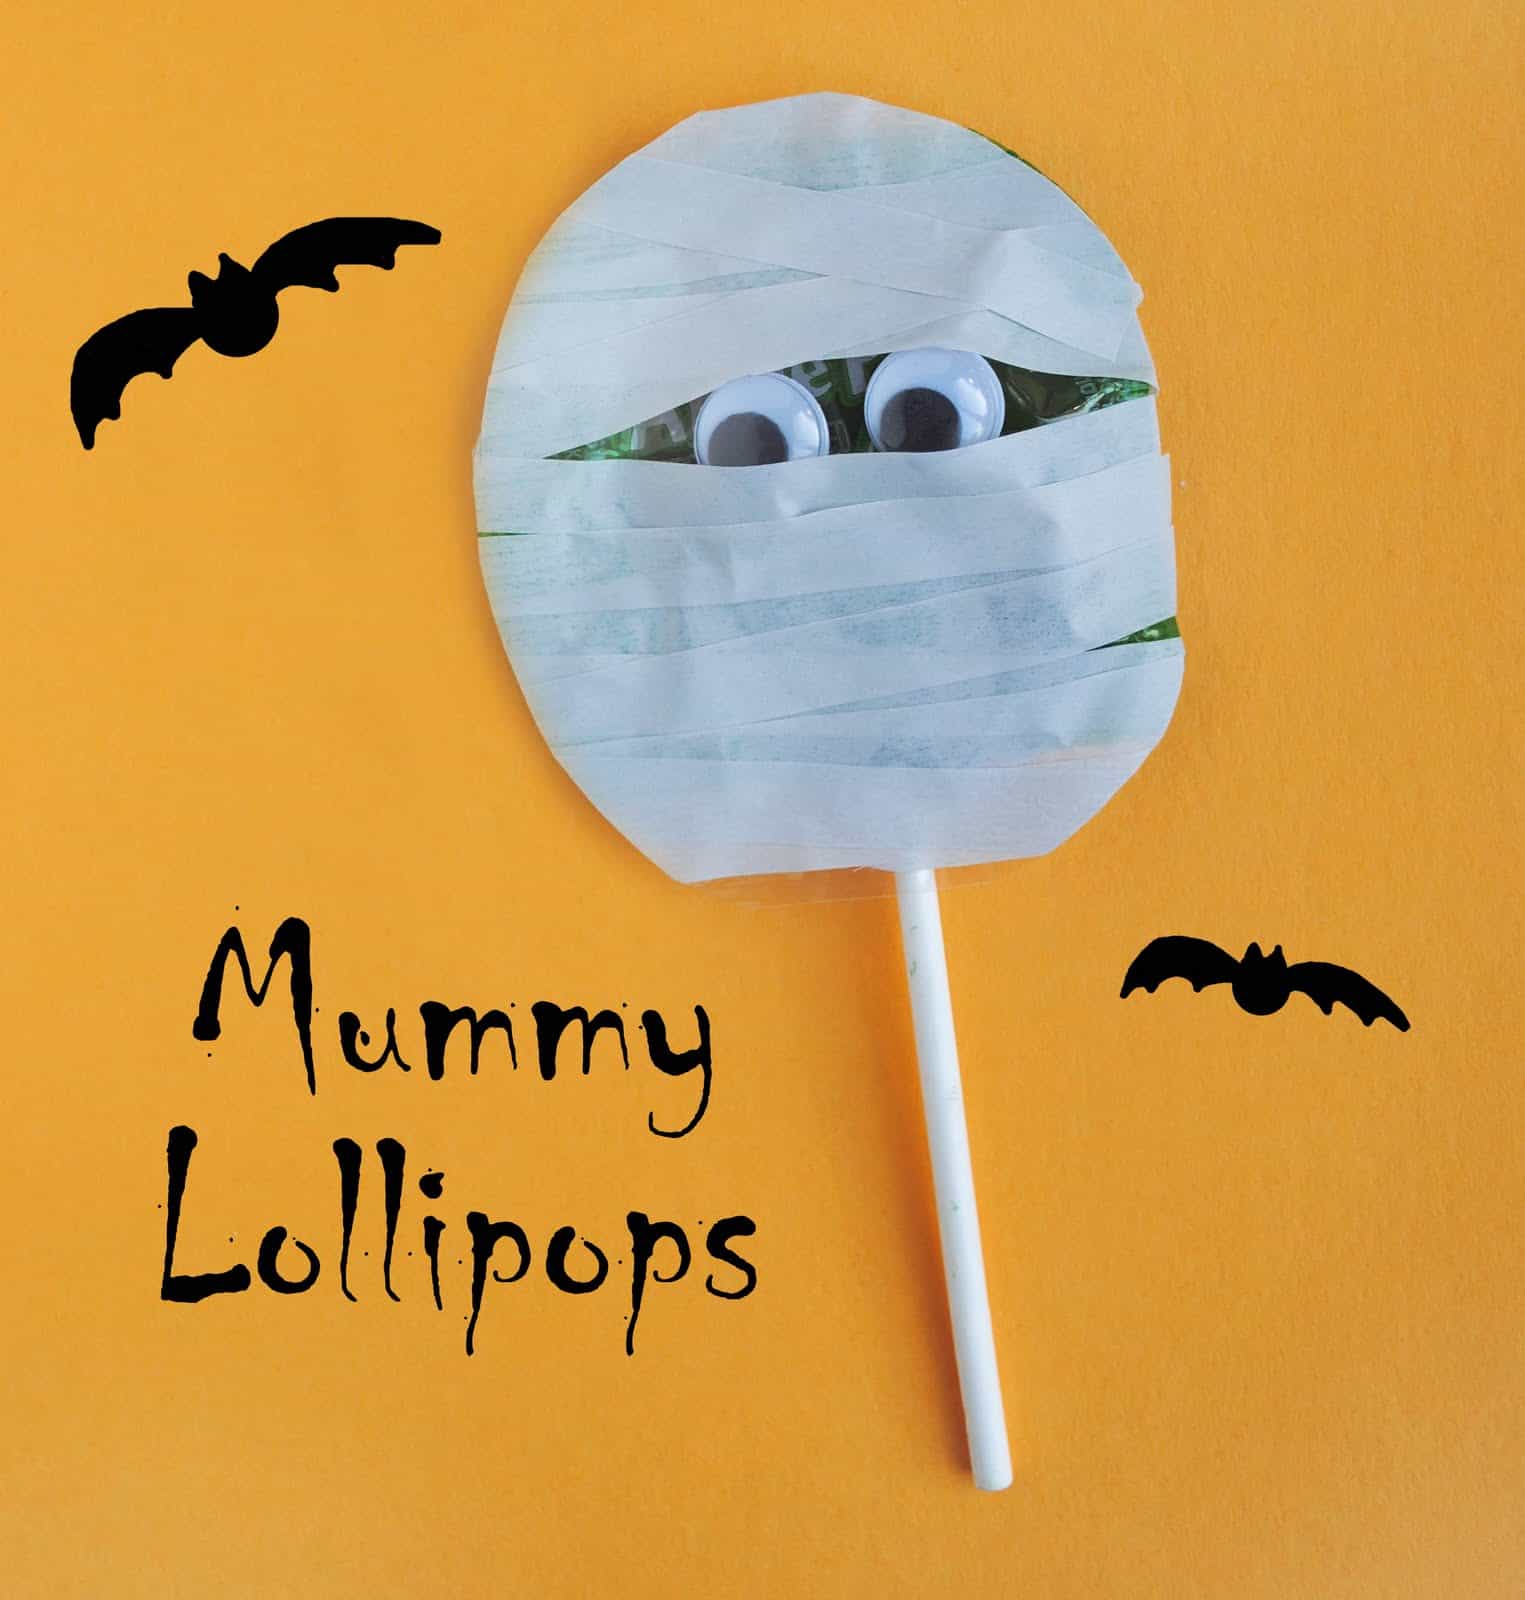 Mummy lollipops